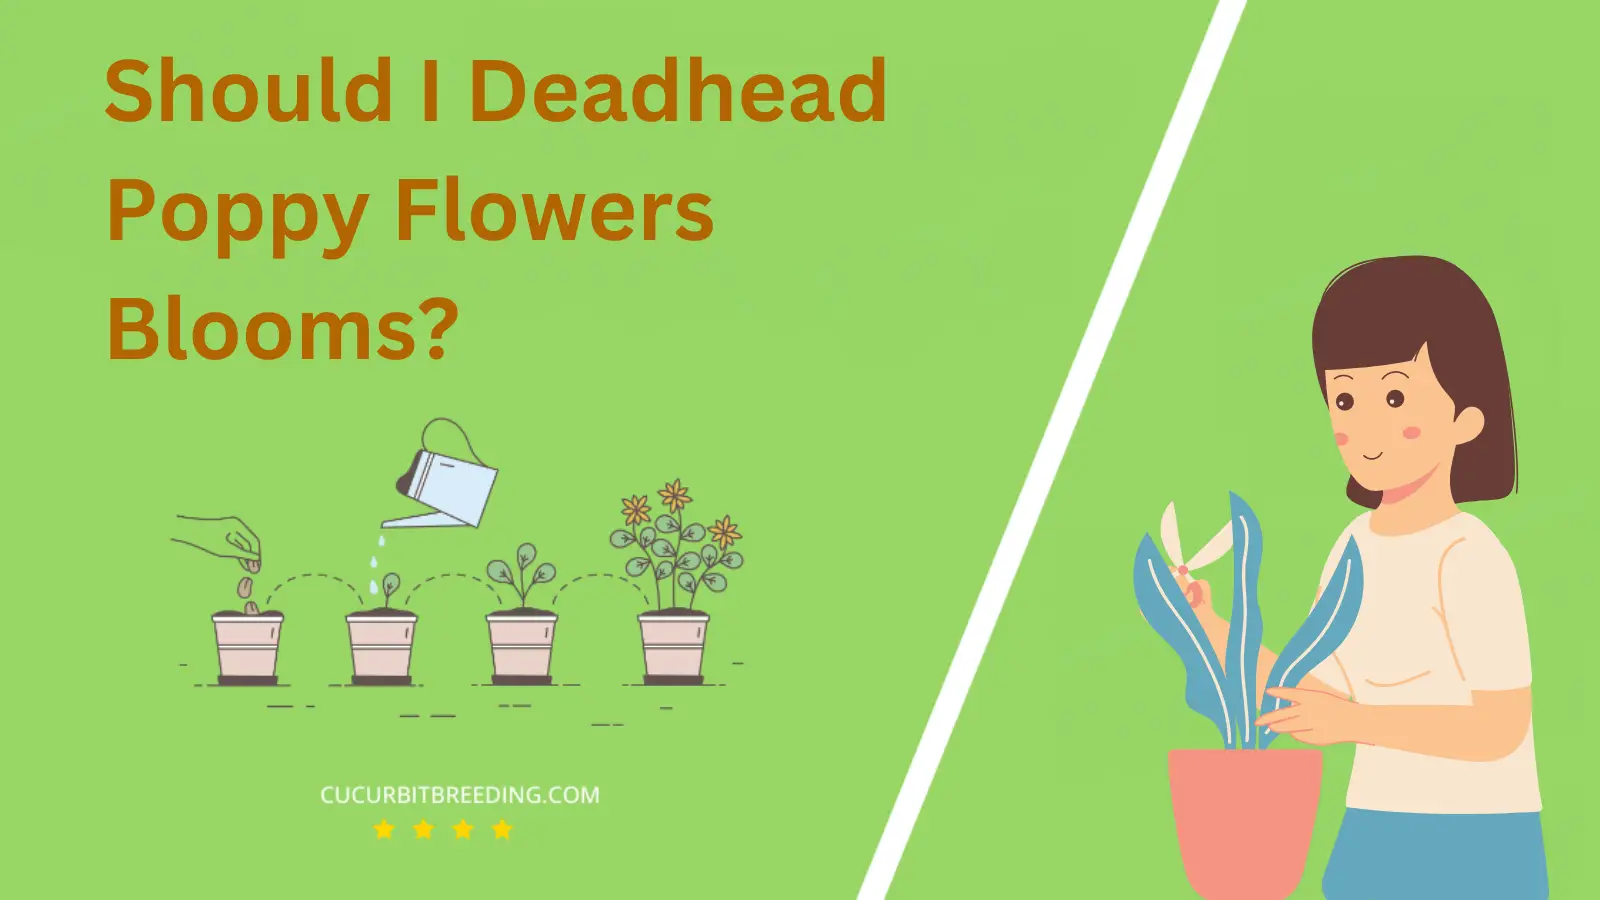 Should I Deadhead Poppy Flowers Blooms?